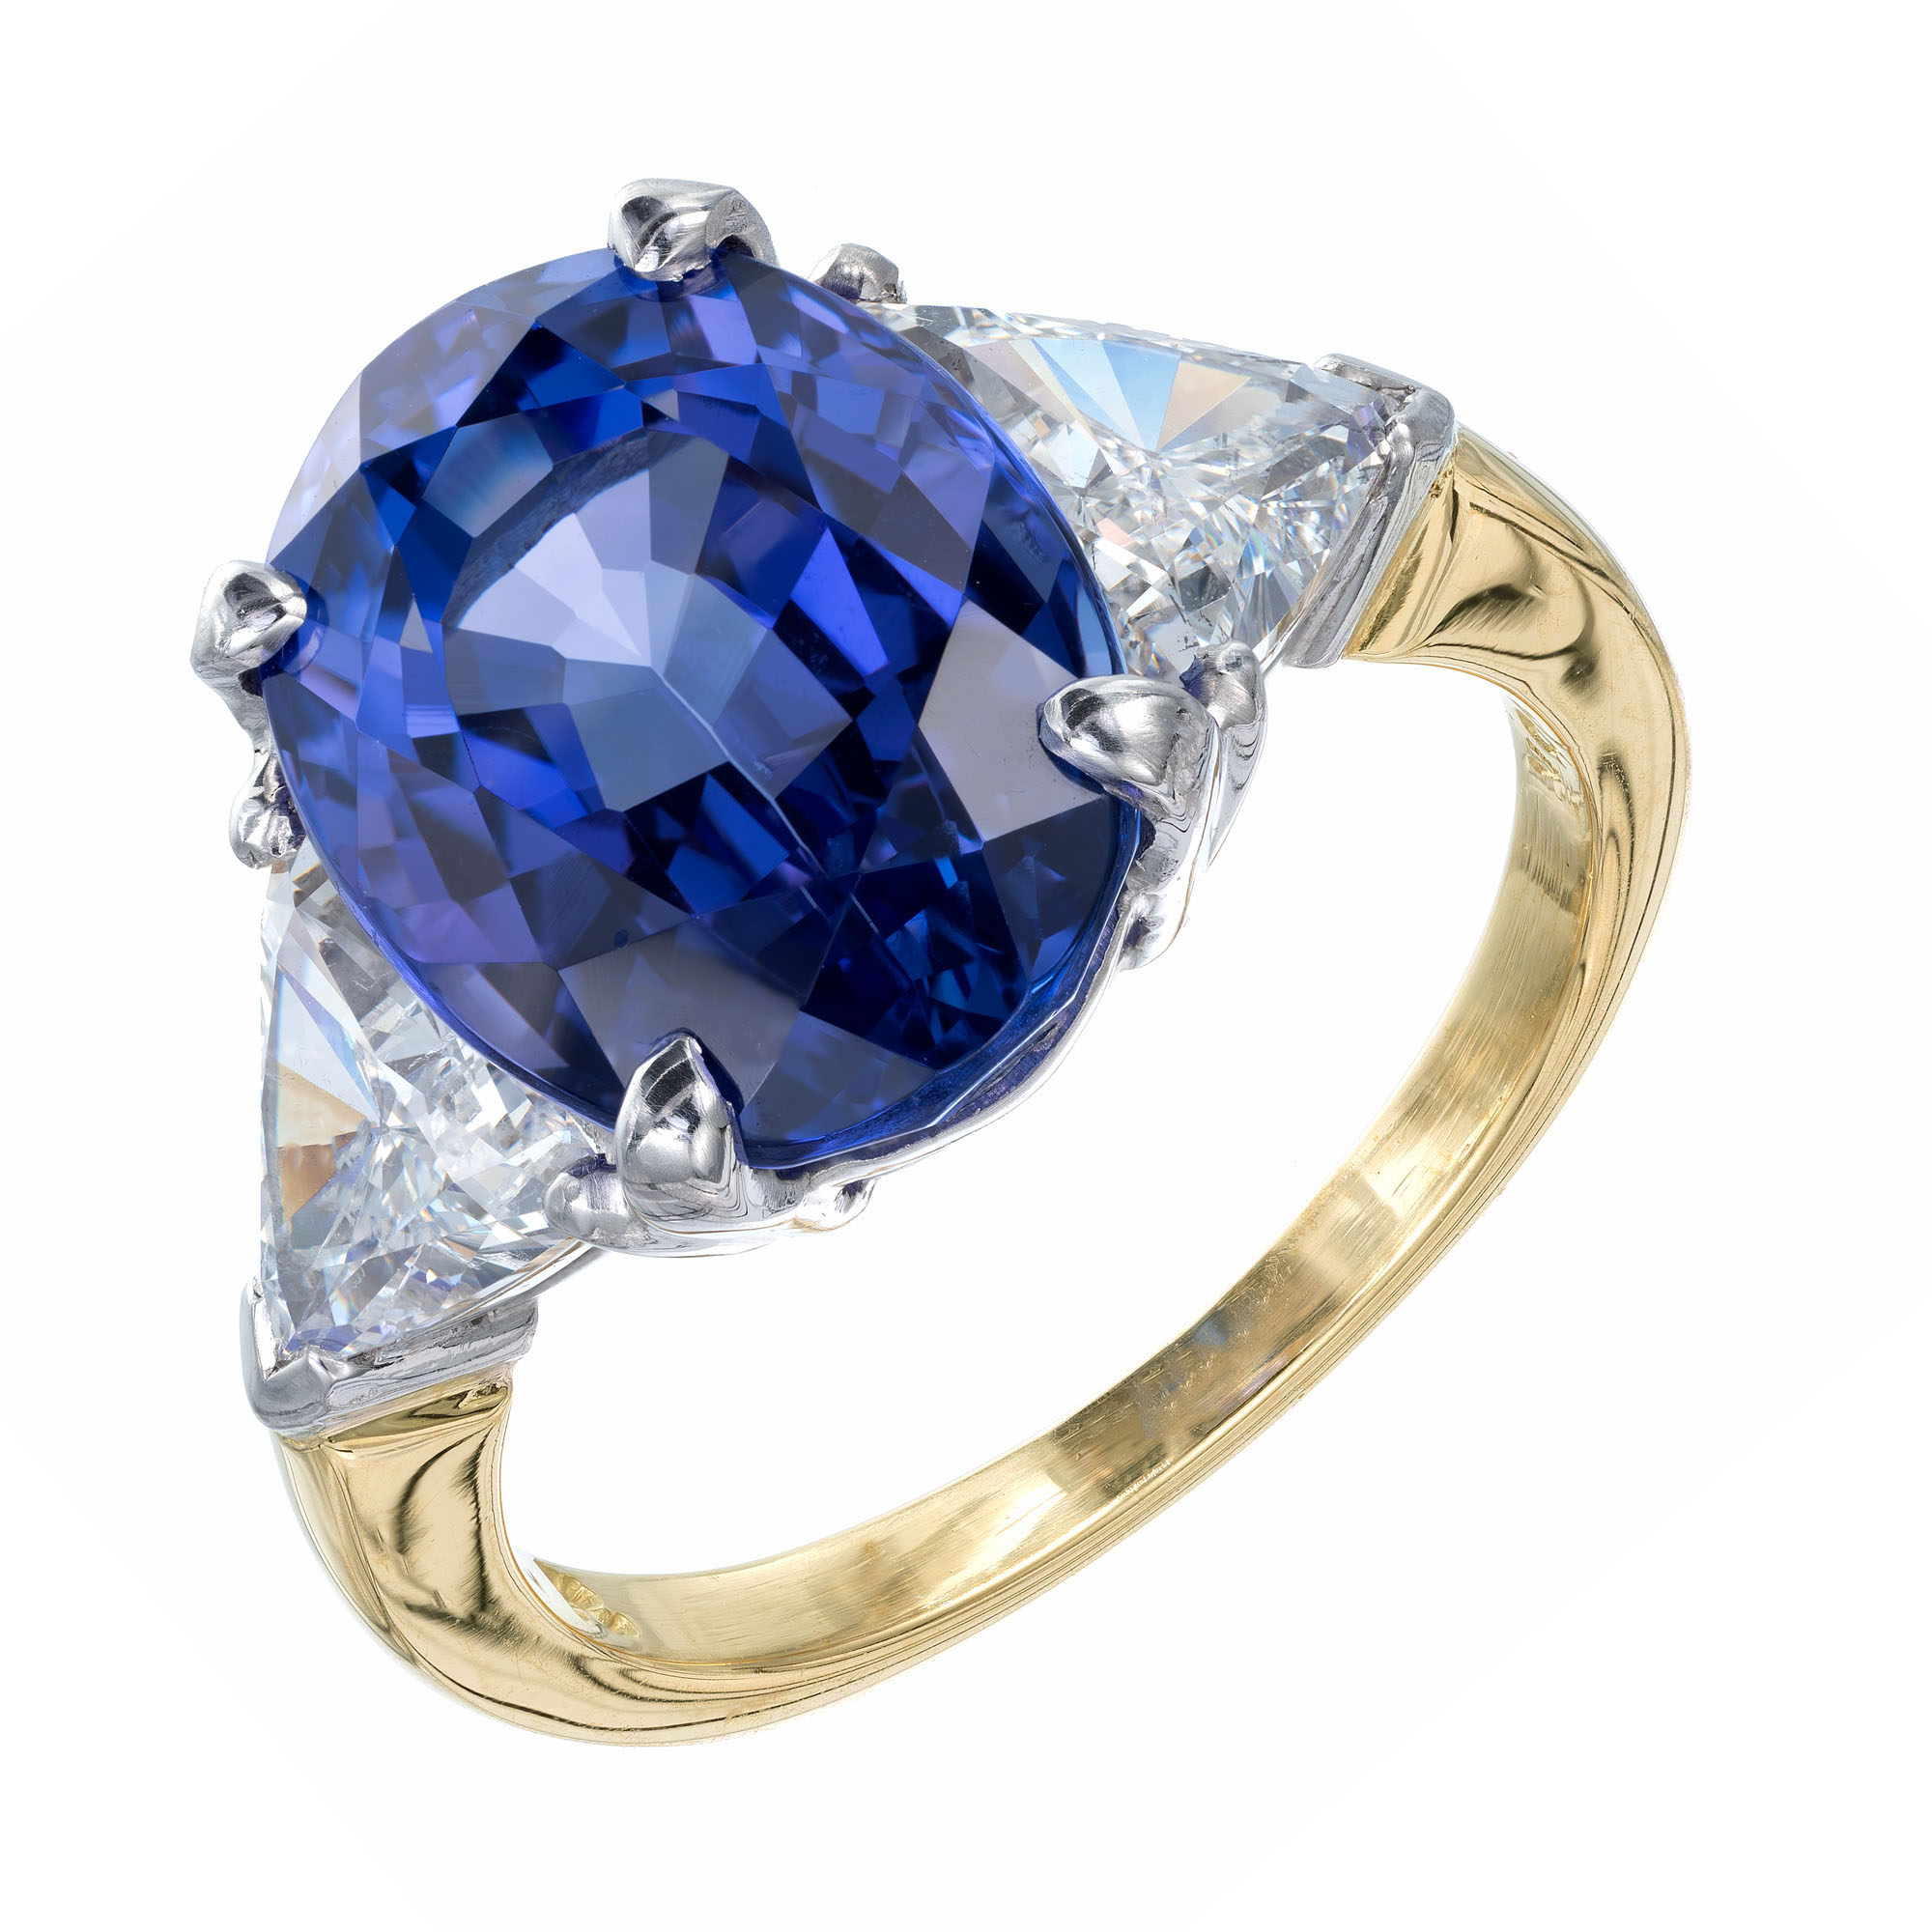 GIA Certified 7.22 Carat Tanzanite Diamond Platinum Engagement Ring | eBay